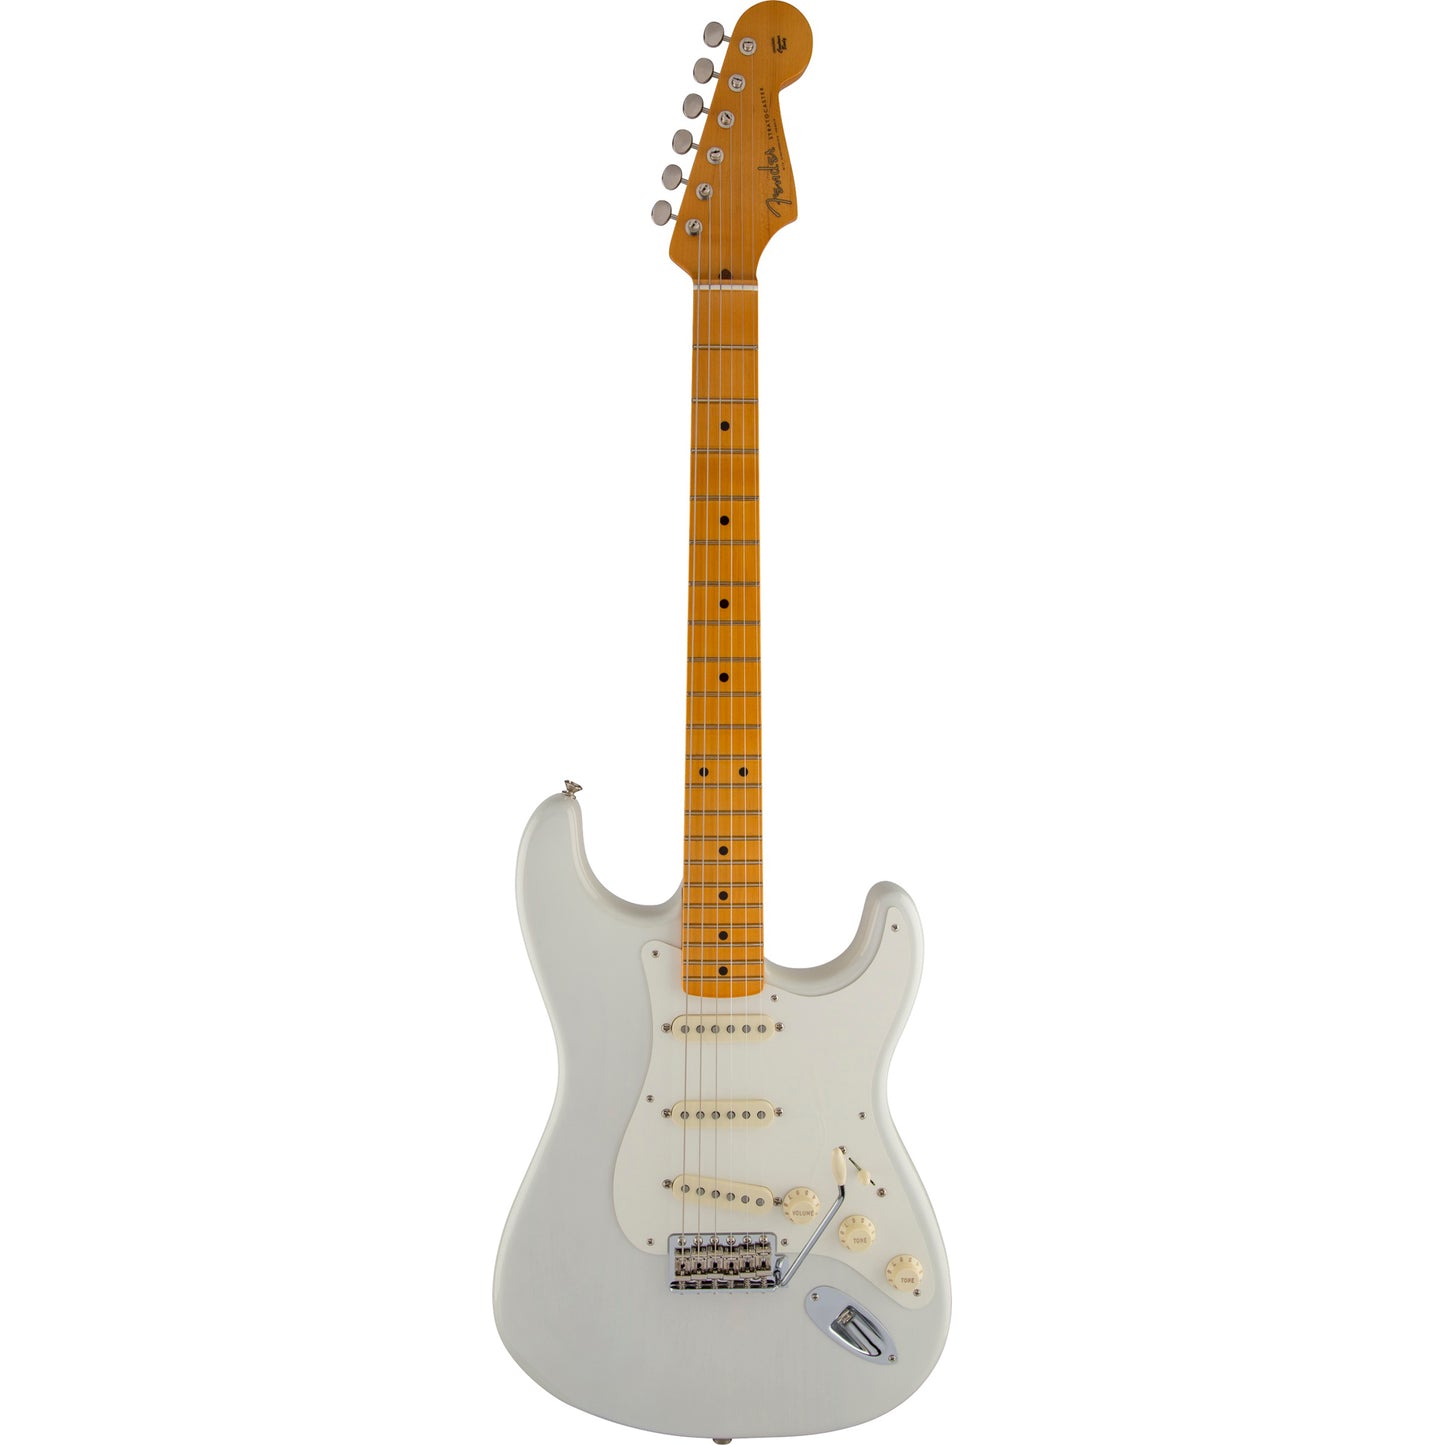 Fender Eric Johnson Stratocaster - Maple Fingerboard, White Blonde